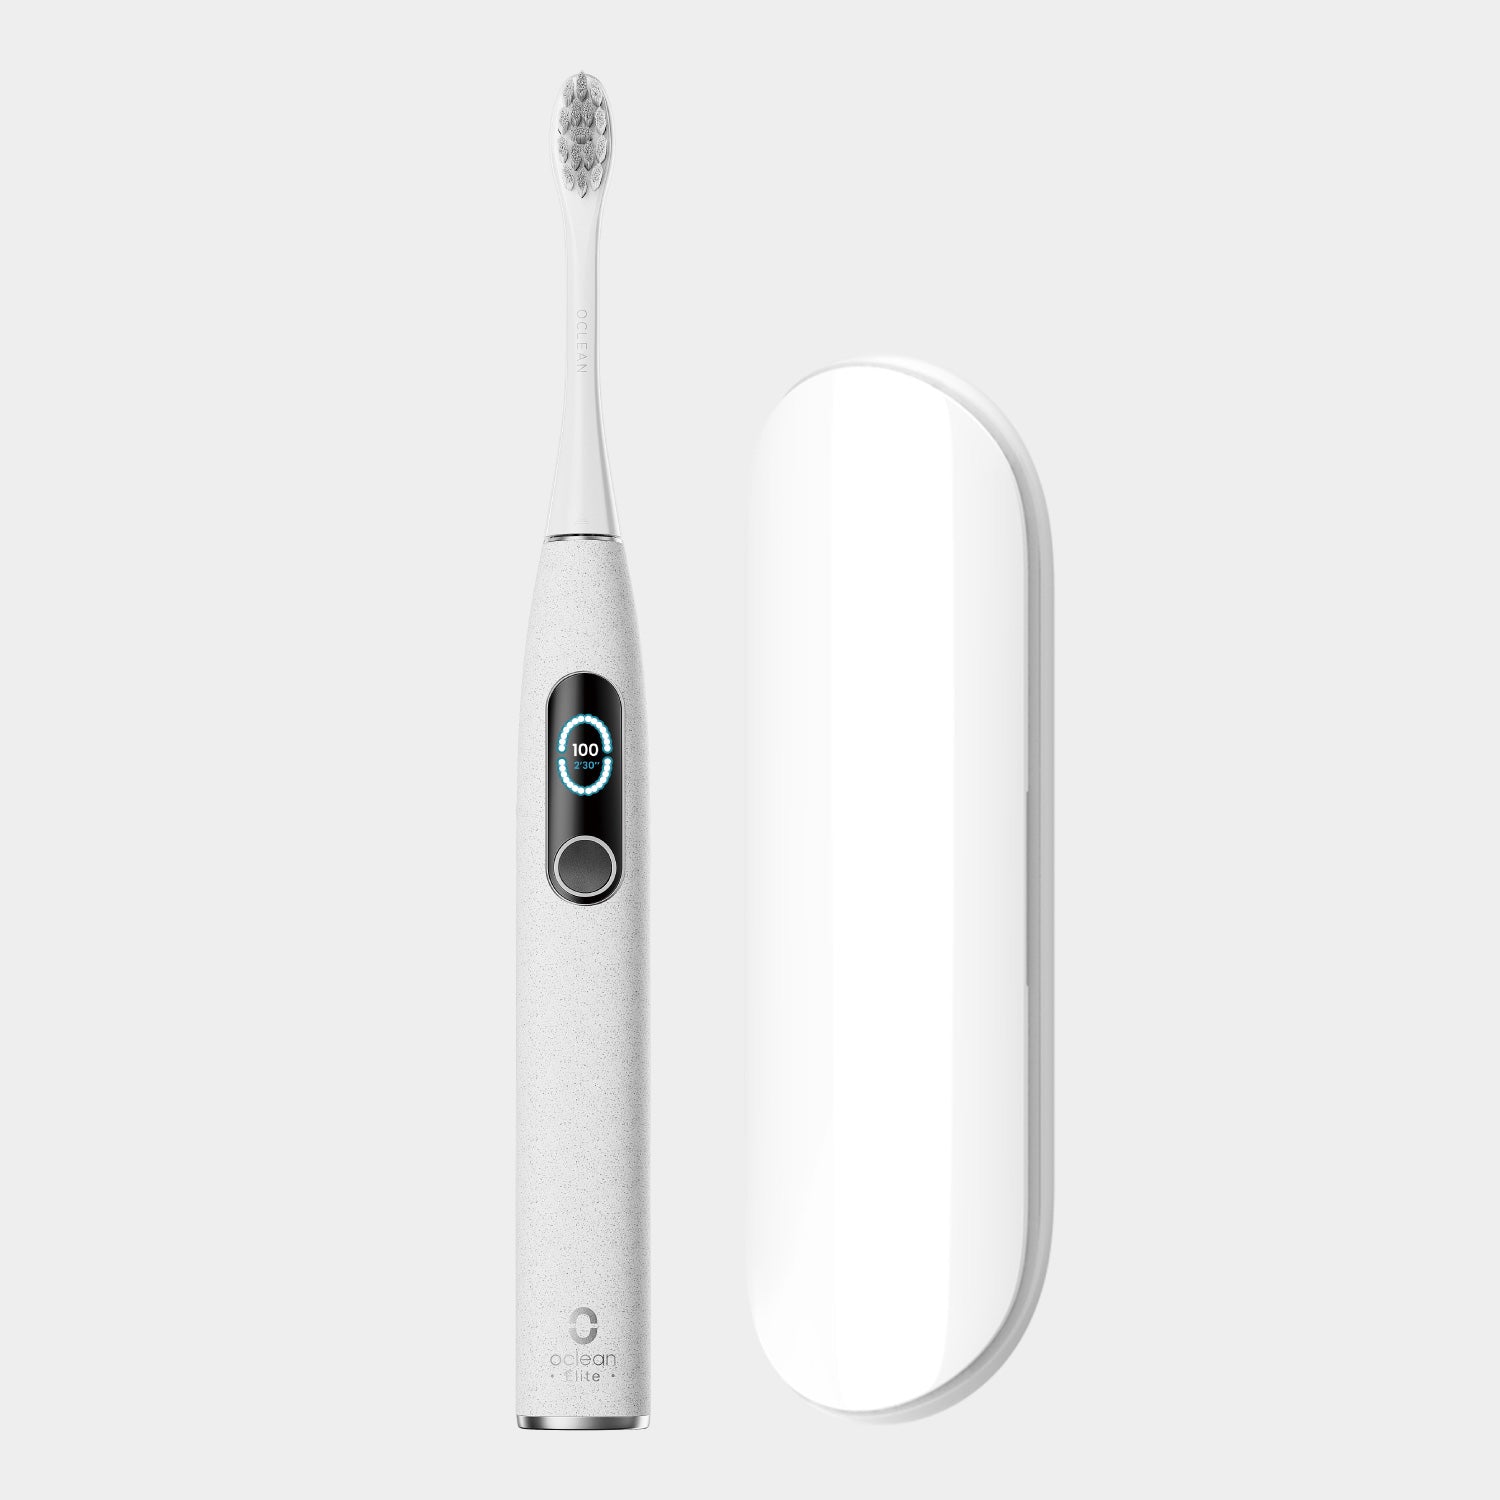 Oclean X Pro Elite Premium Set-Toothbrushes-Oclean US Store